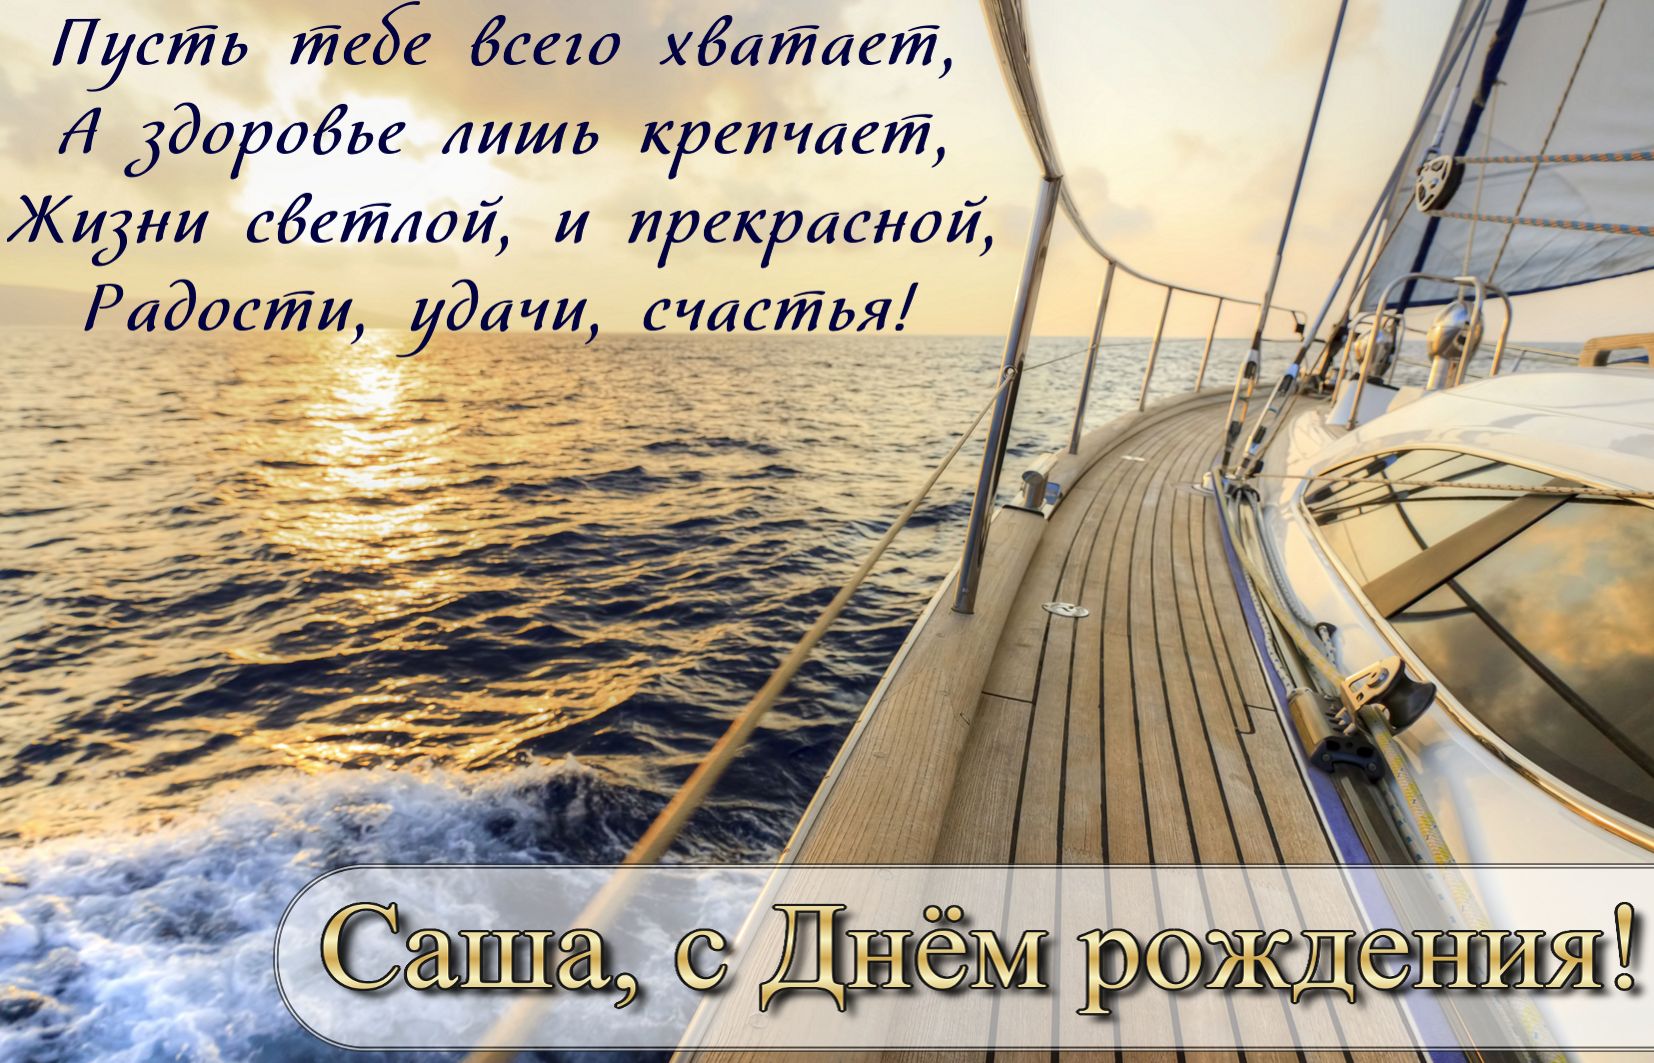 Открытка на День рождения Александру - вид на закат в море с палубы яхты